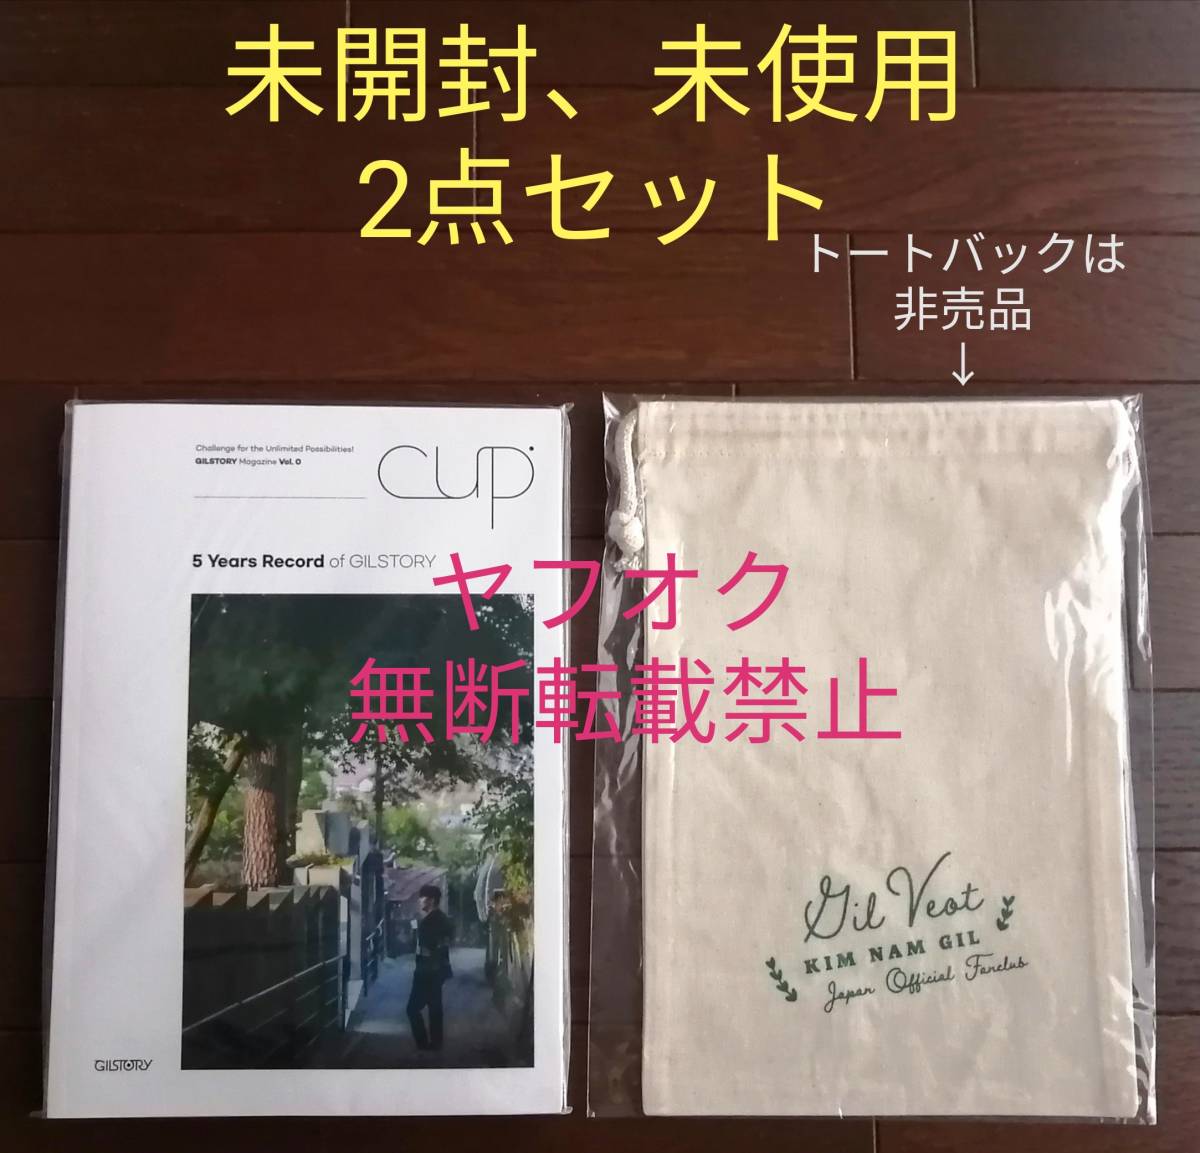 اشتريها الآن [مجموعة من 2] نادي المعجبين الرسمي لـ Kim Nam Gil ليس للبيع حقيبة حمل (سلع محدثة) الإصدار الأول من CUP مقال مصور للذكرى الخامسة لـ GILSTORY, إلبوم الصور, موهبة الذكور, آحرون